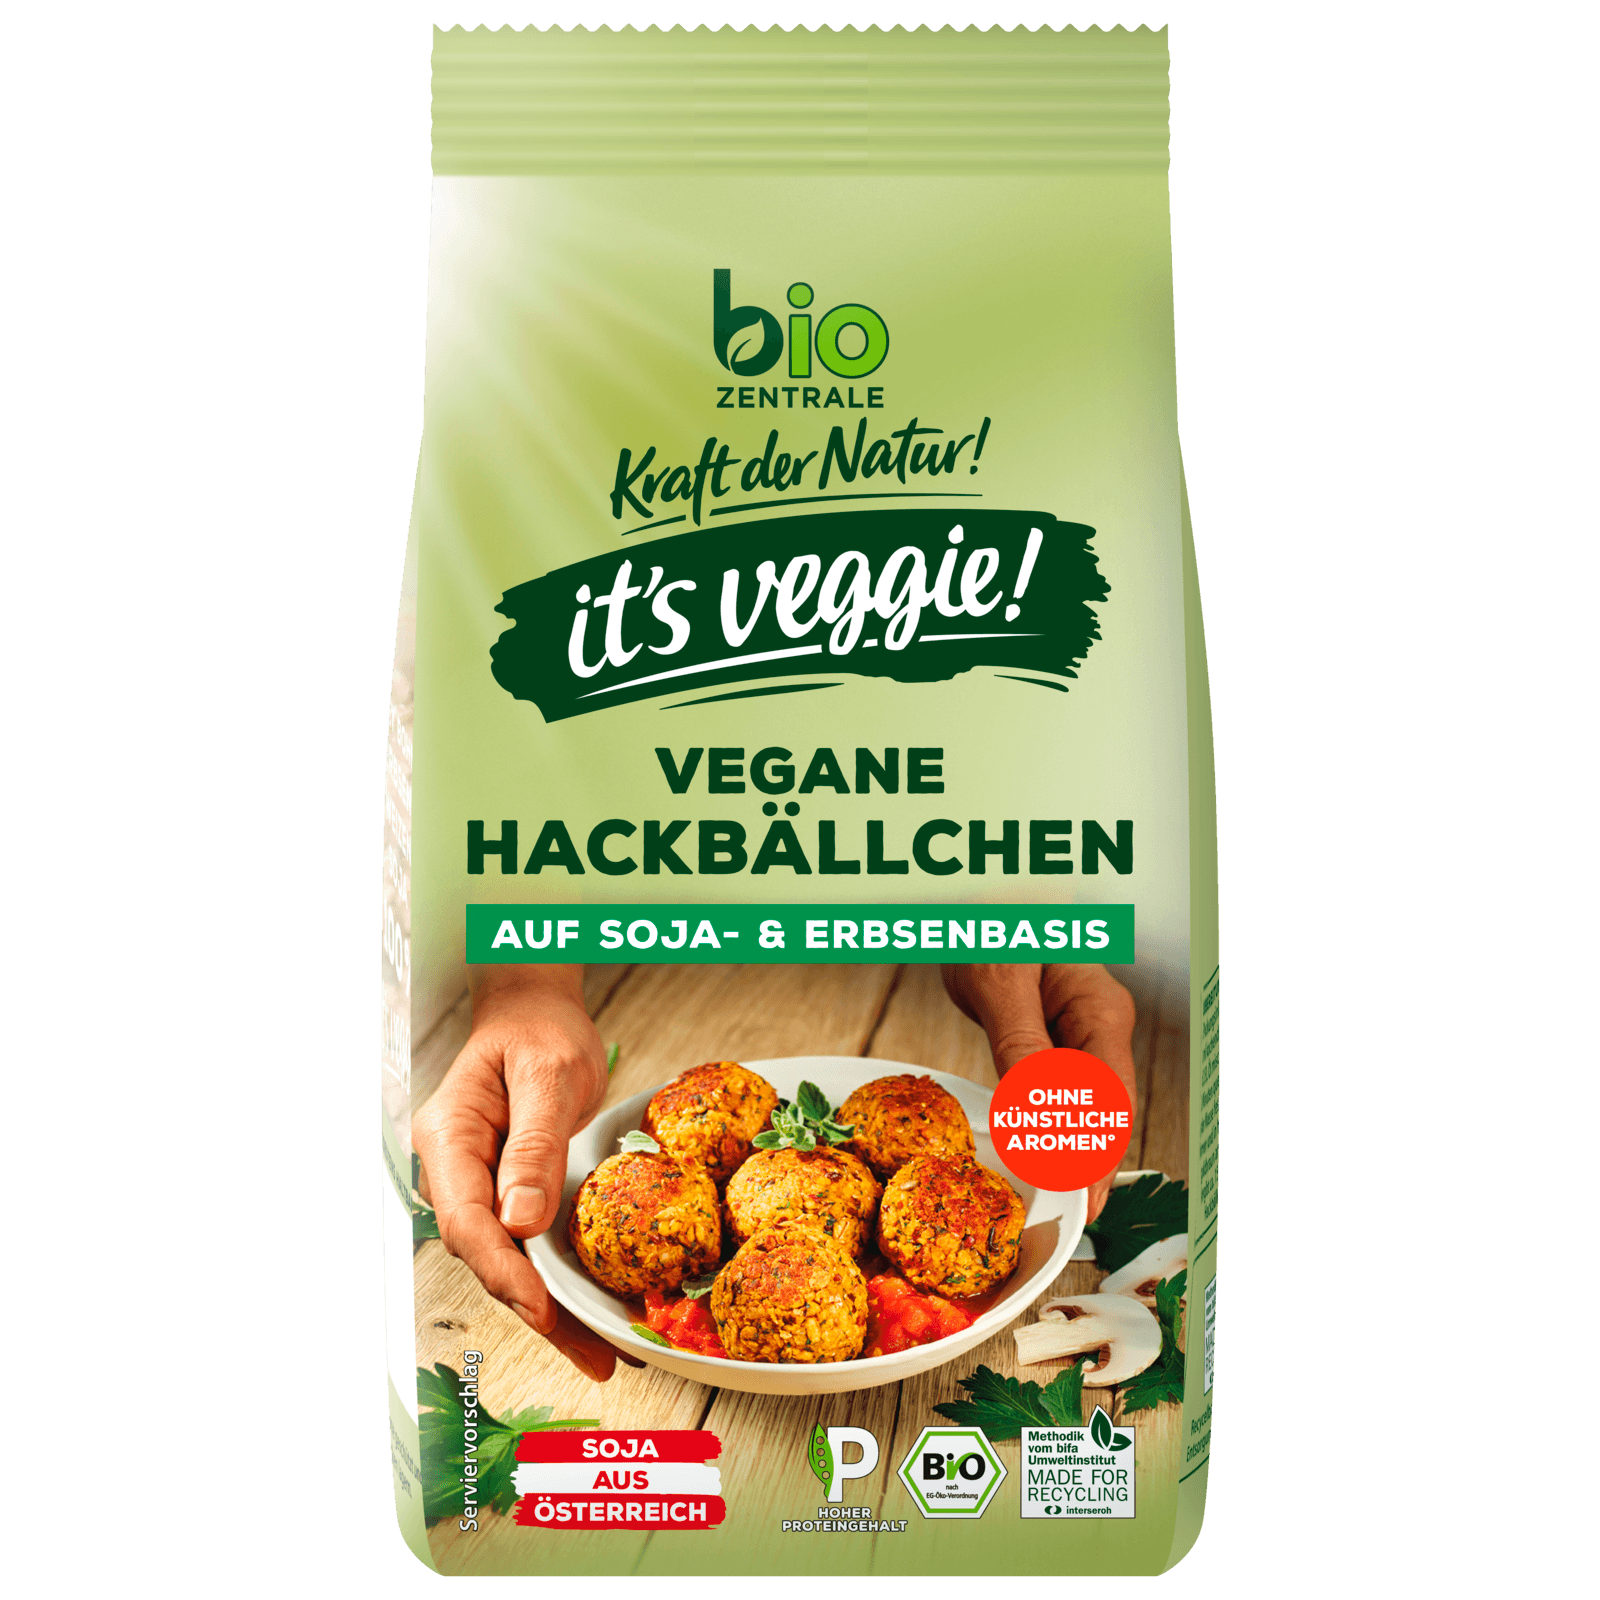 Biozentrale Bio Hackbällchen vegan 150g bei REWE online bestellen!